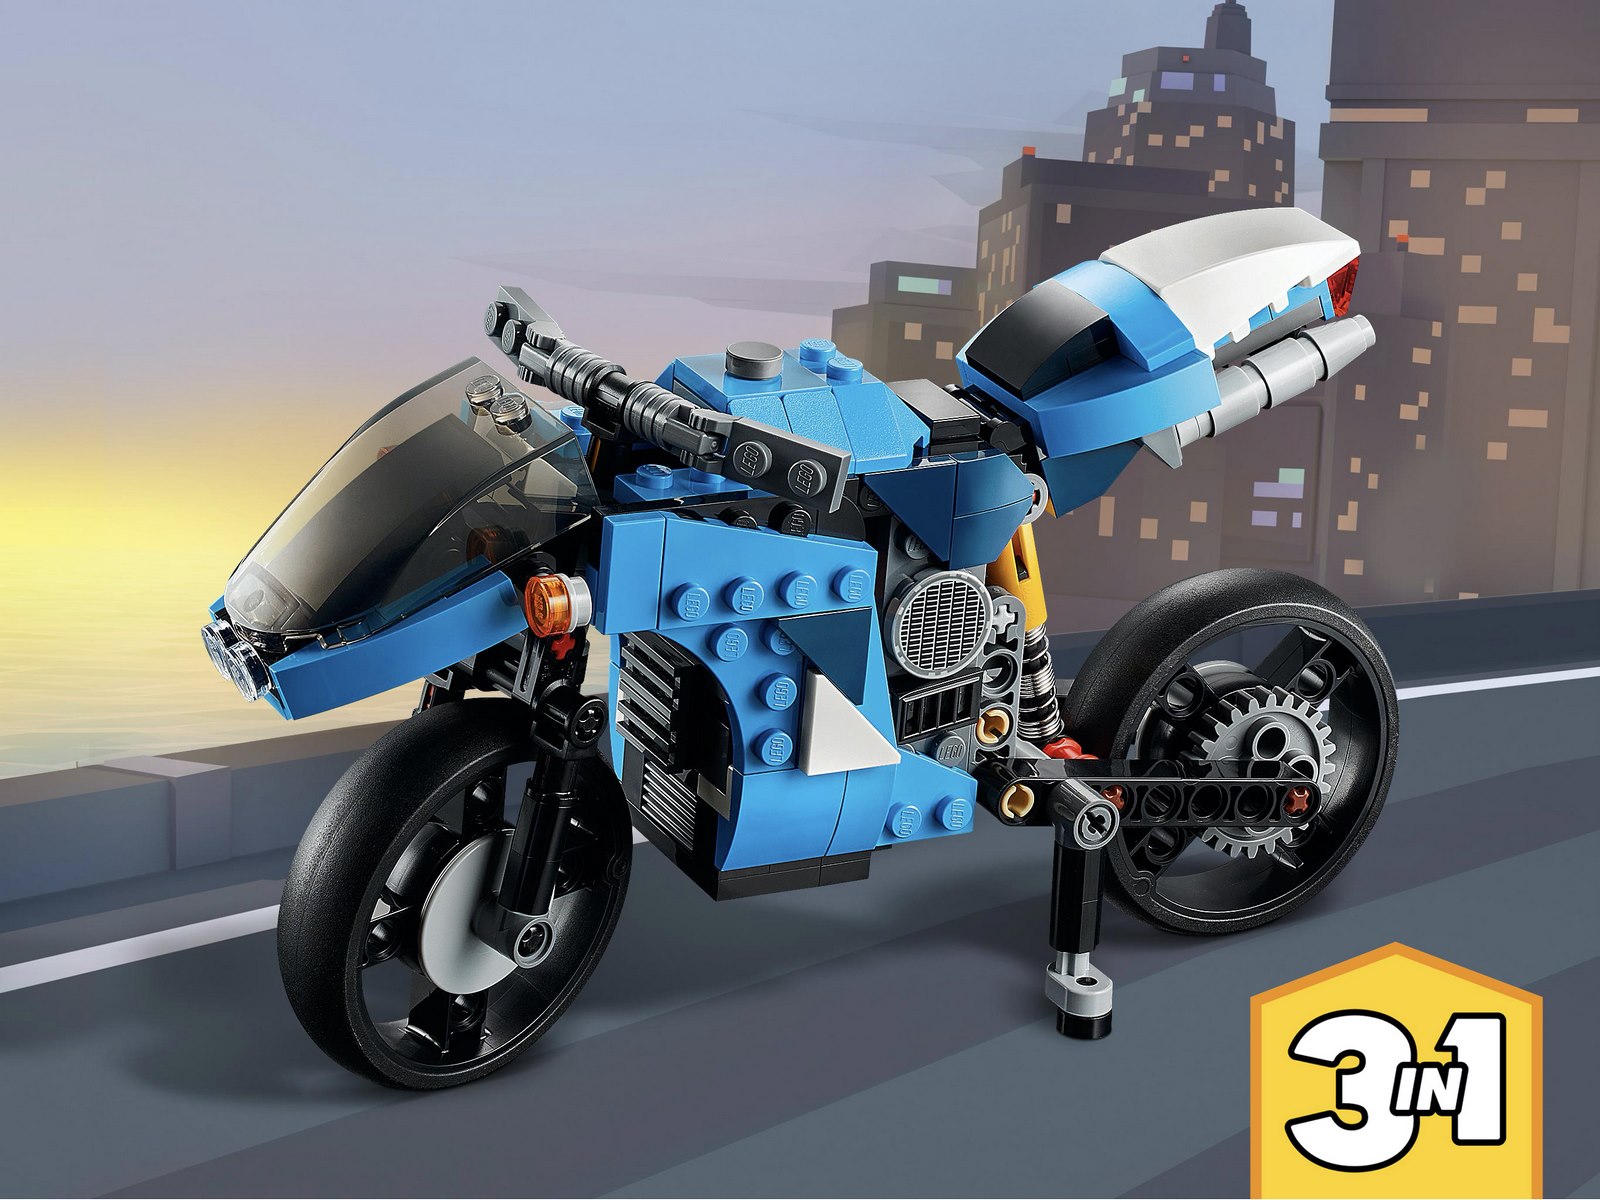 Конструктор LEGO Creator 3в1 «Супербайк» 31114 / 236 деталей